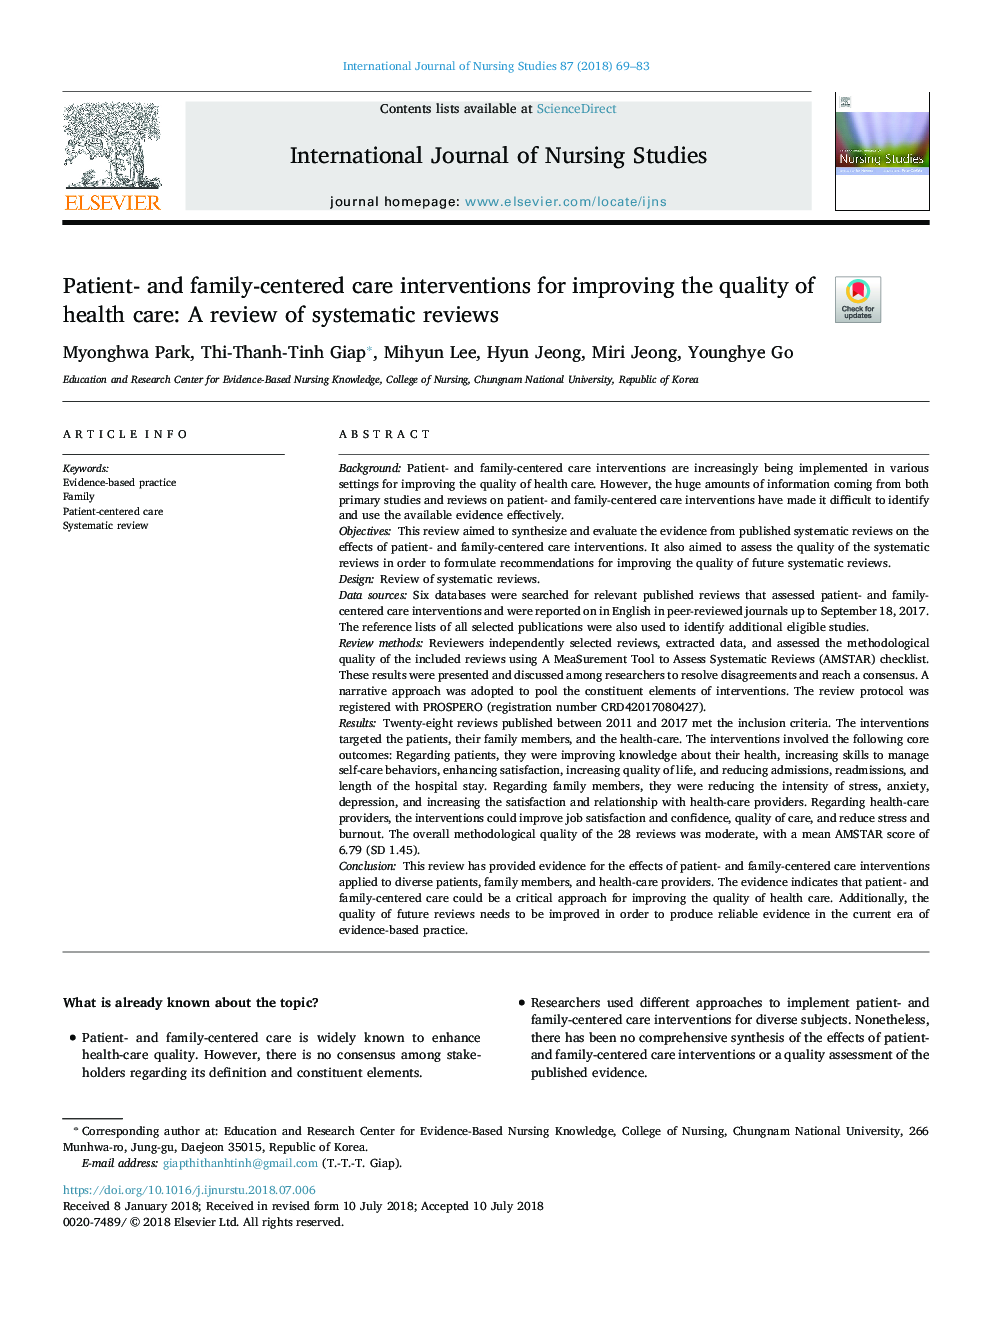 مداخلات مراقبت از بیمار و خانواده محور برای بهبود کیفیت مراقبت های بهداشتی: بررسی های سیستماتیک 